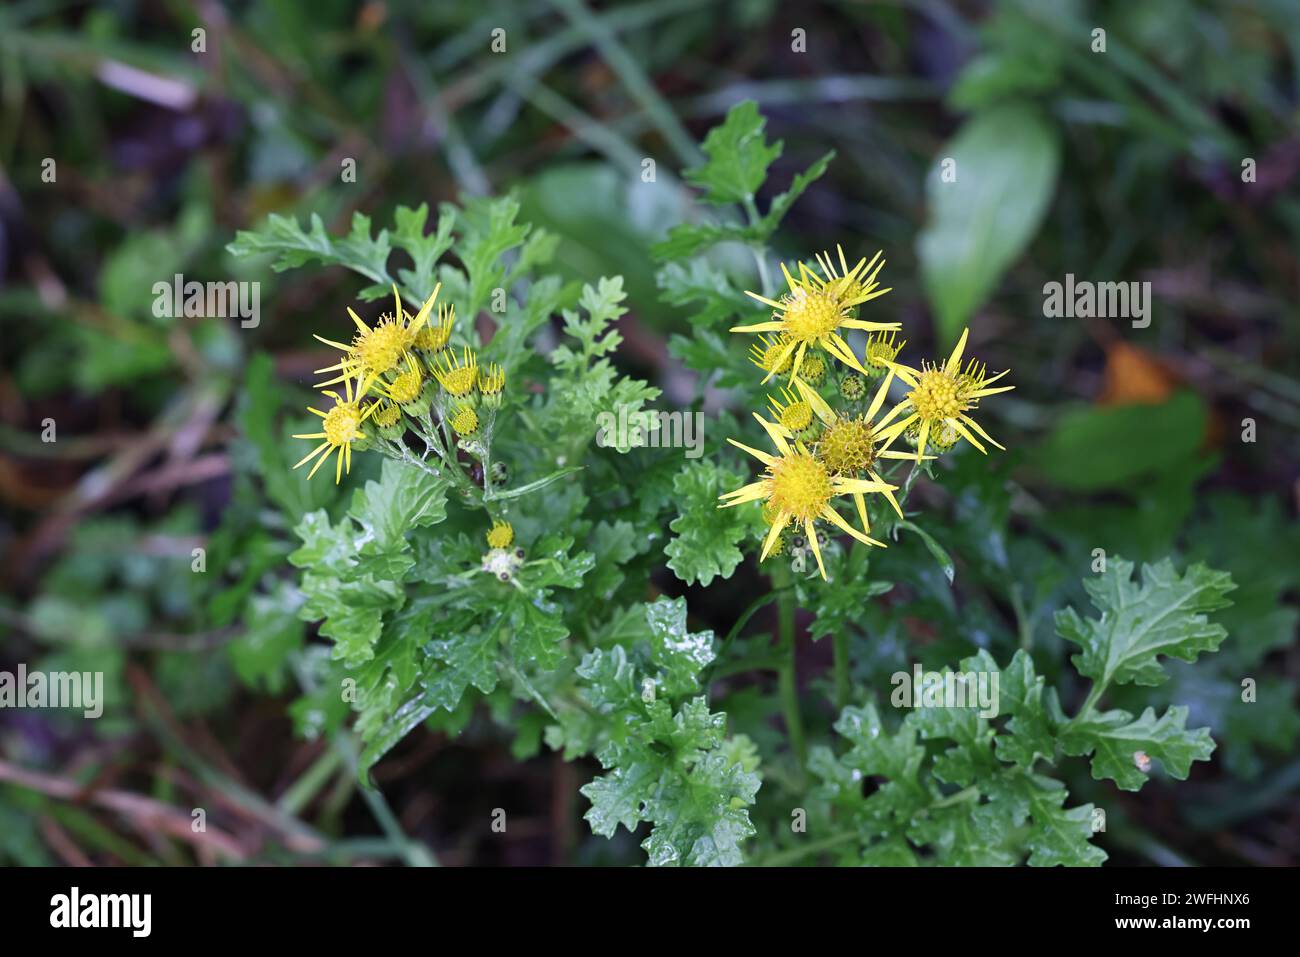 Jacobaea vulgaris, également appelé Senecio jacobaea, communément appelé ragwort commun, puant willie ou tansy ragwort, plante toxique sauvage du Finlan Banque D'Images